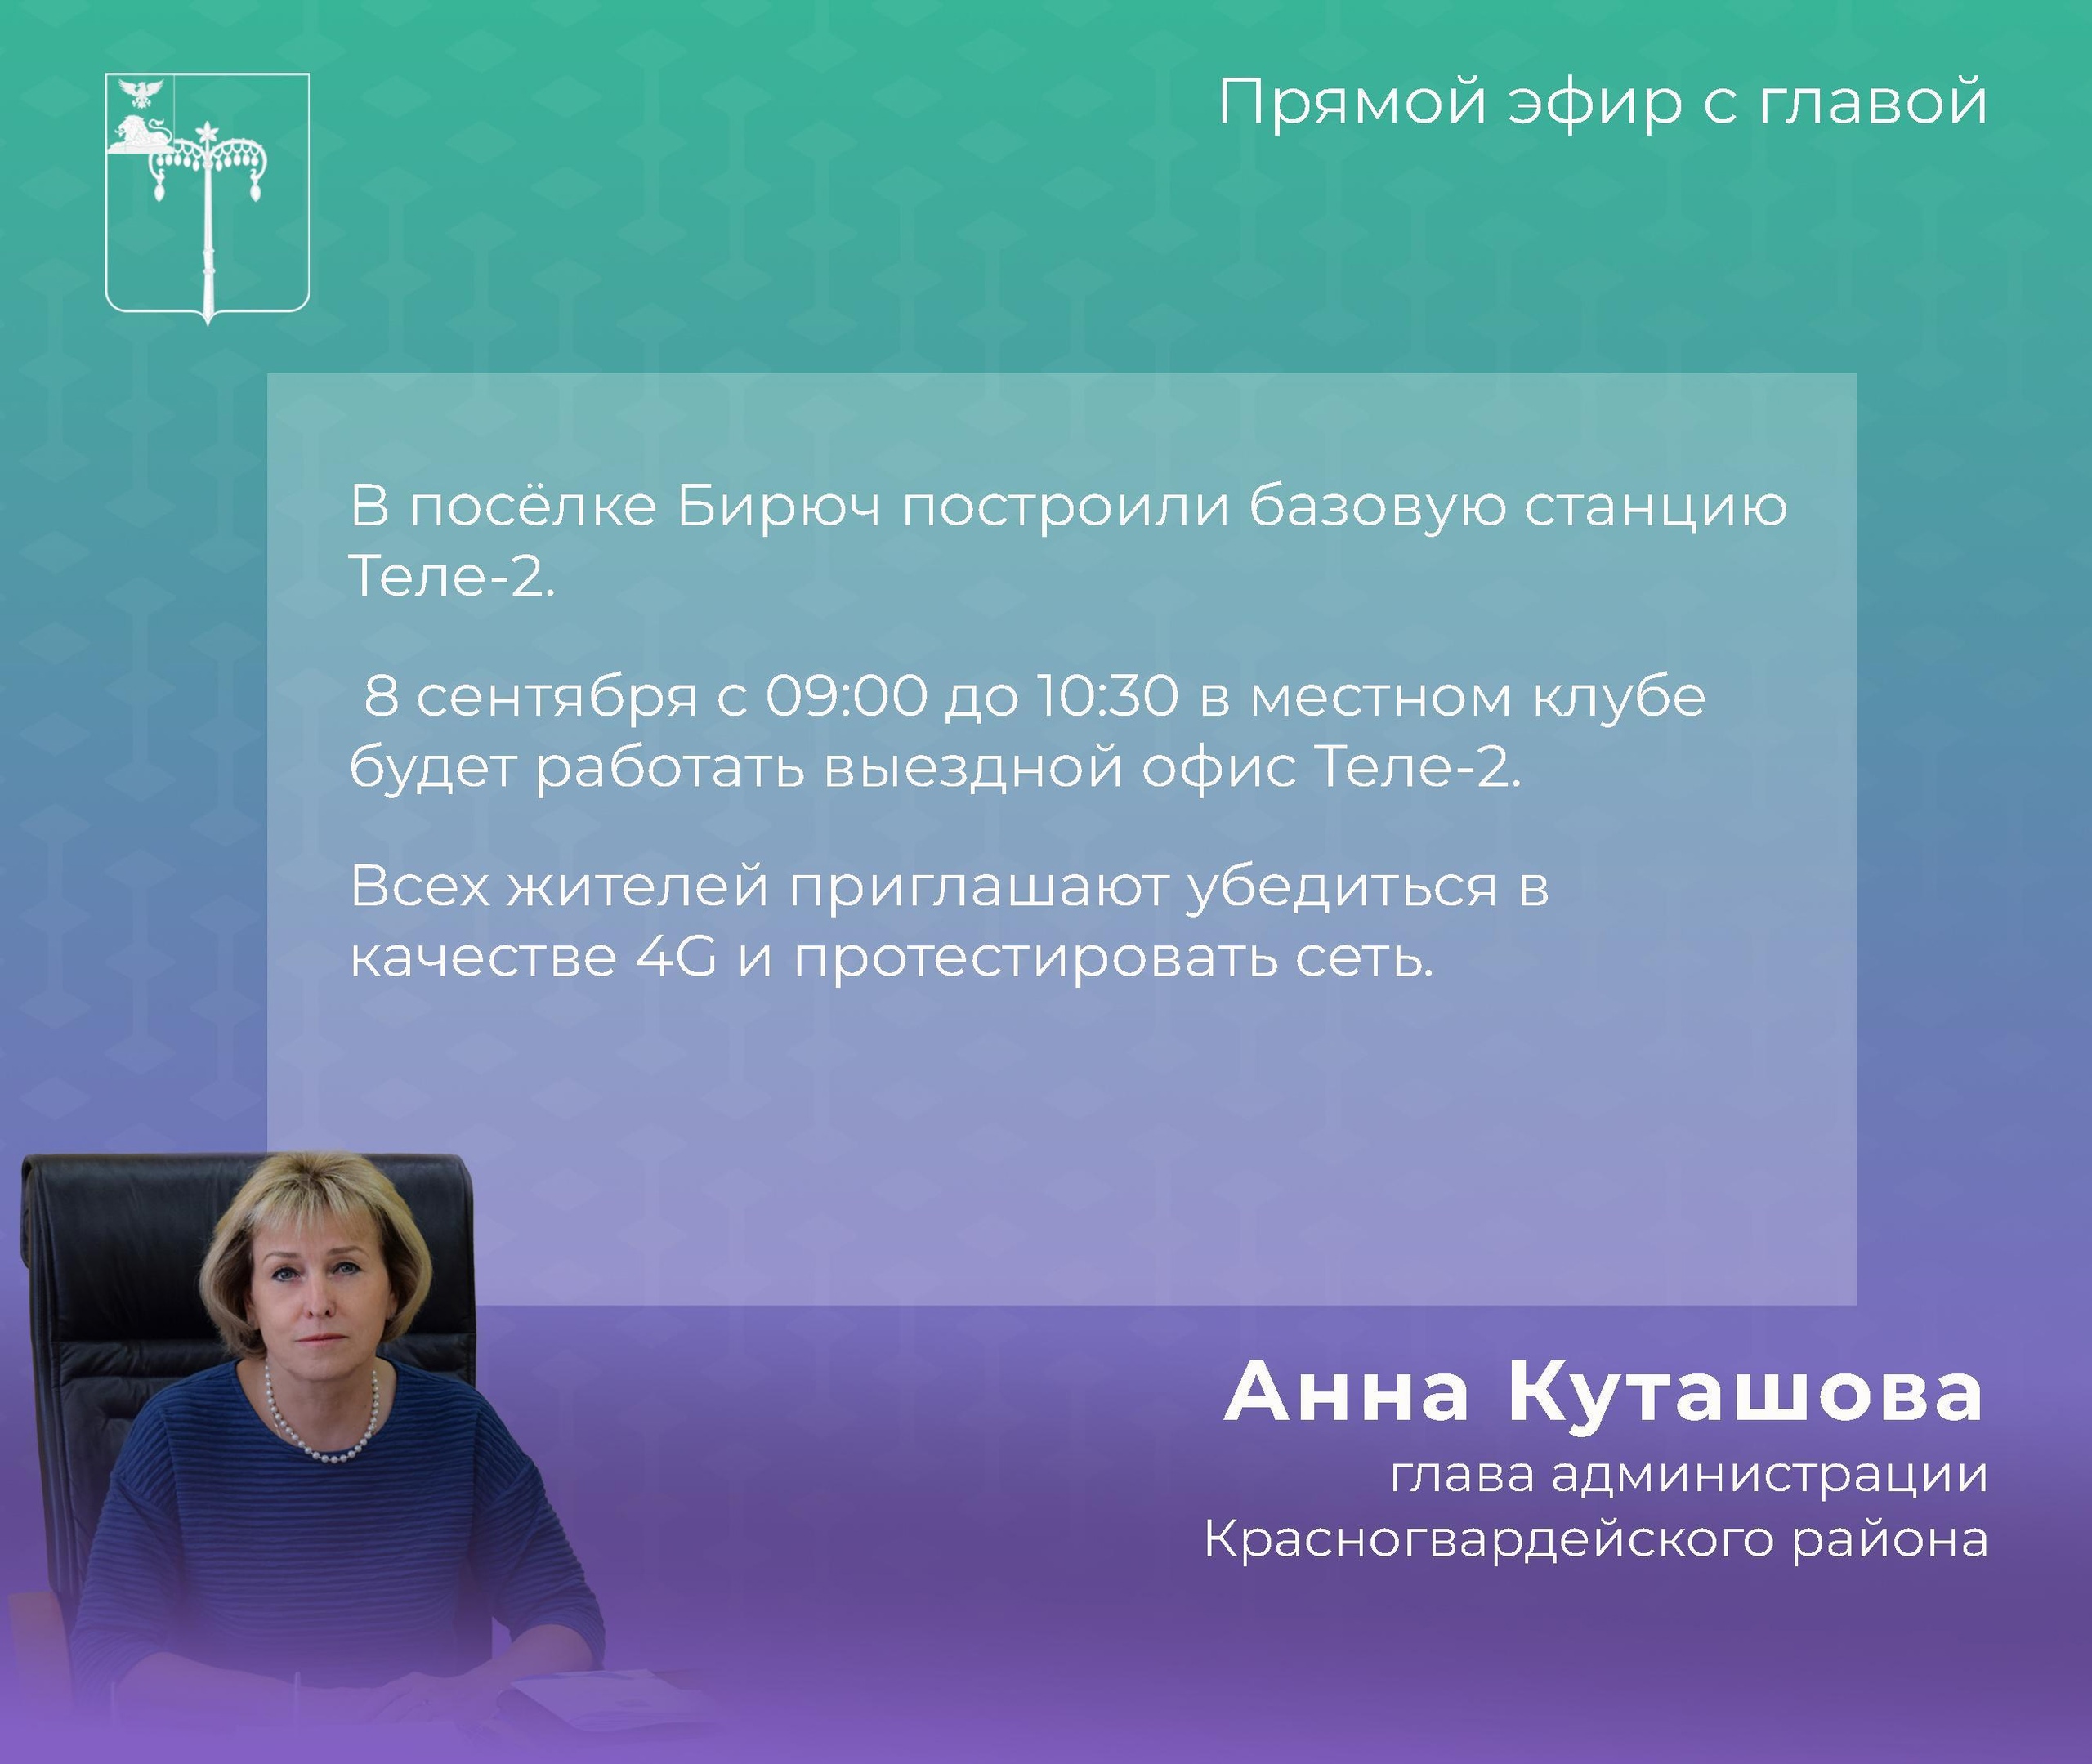 В прямом эфире глава администрации Анна Куташова проинформировала, что в посёлке Бирюч построили базовую станцию Теле-2..